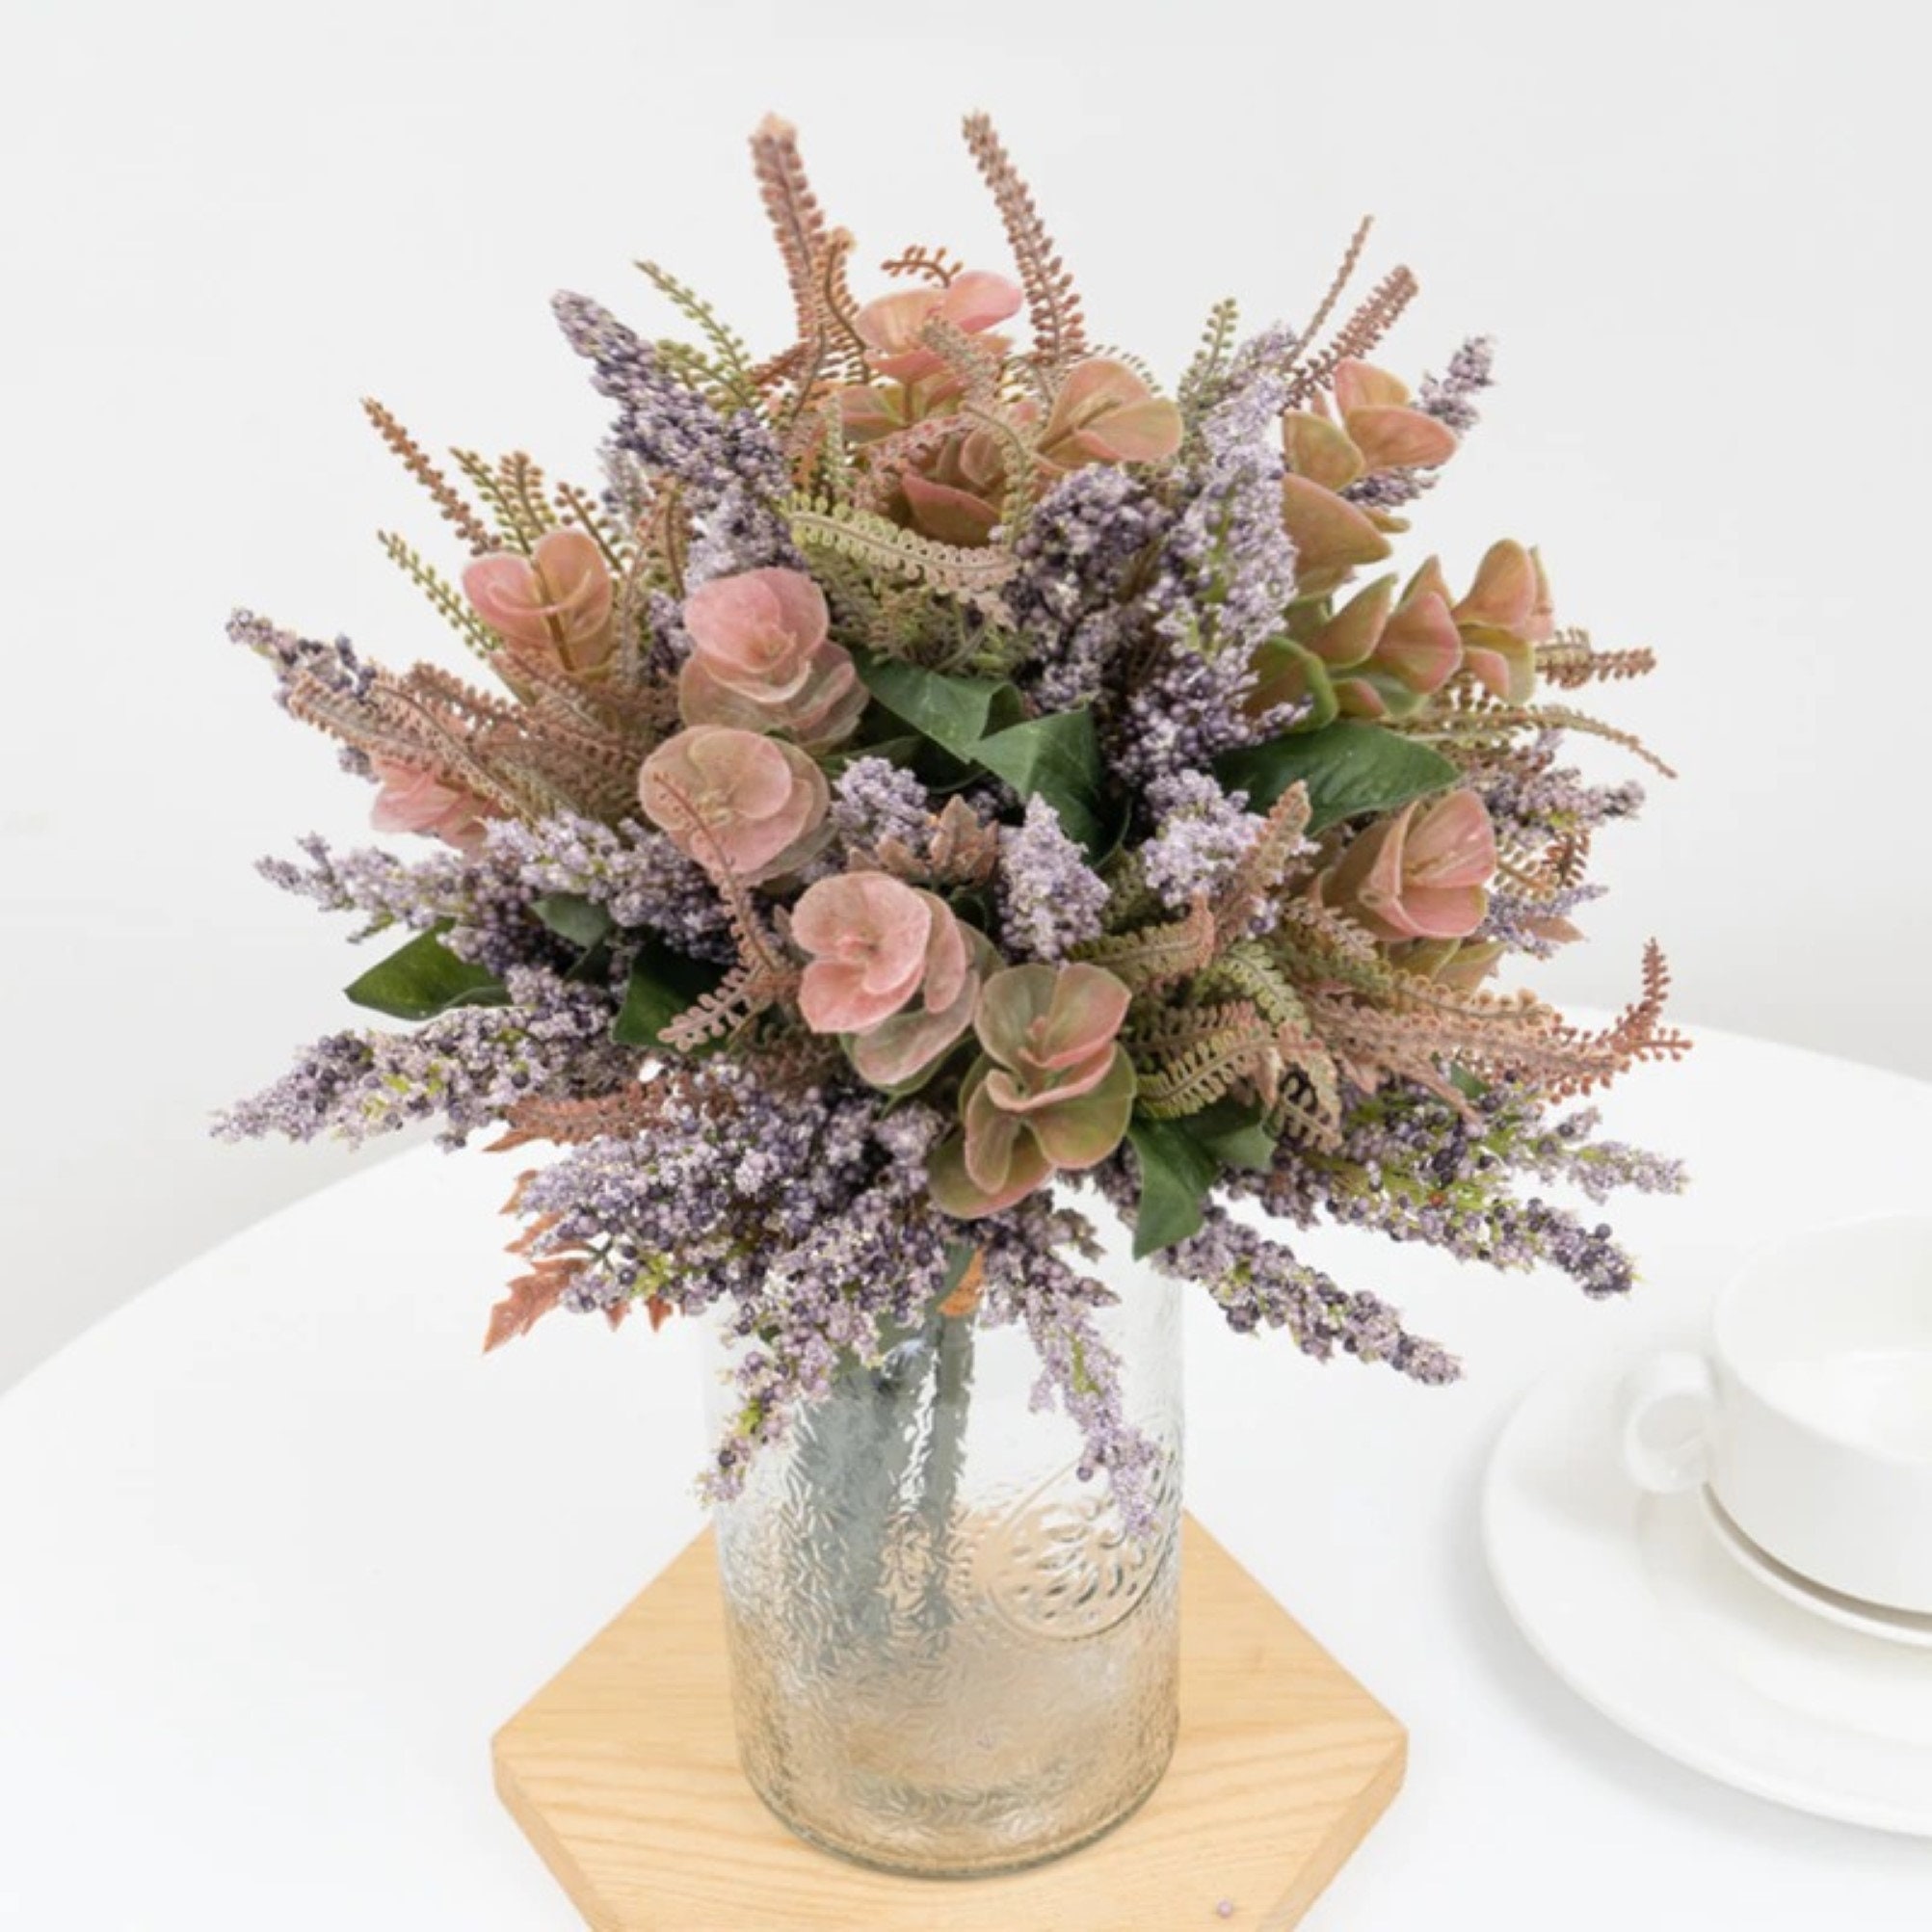 Jasmine flowers - Long stem vase flowers - Fake flower stems - Winter stems  - Spring home decor